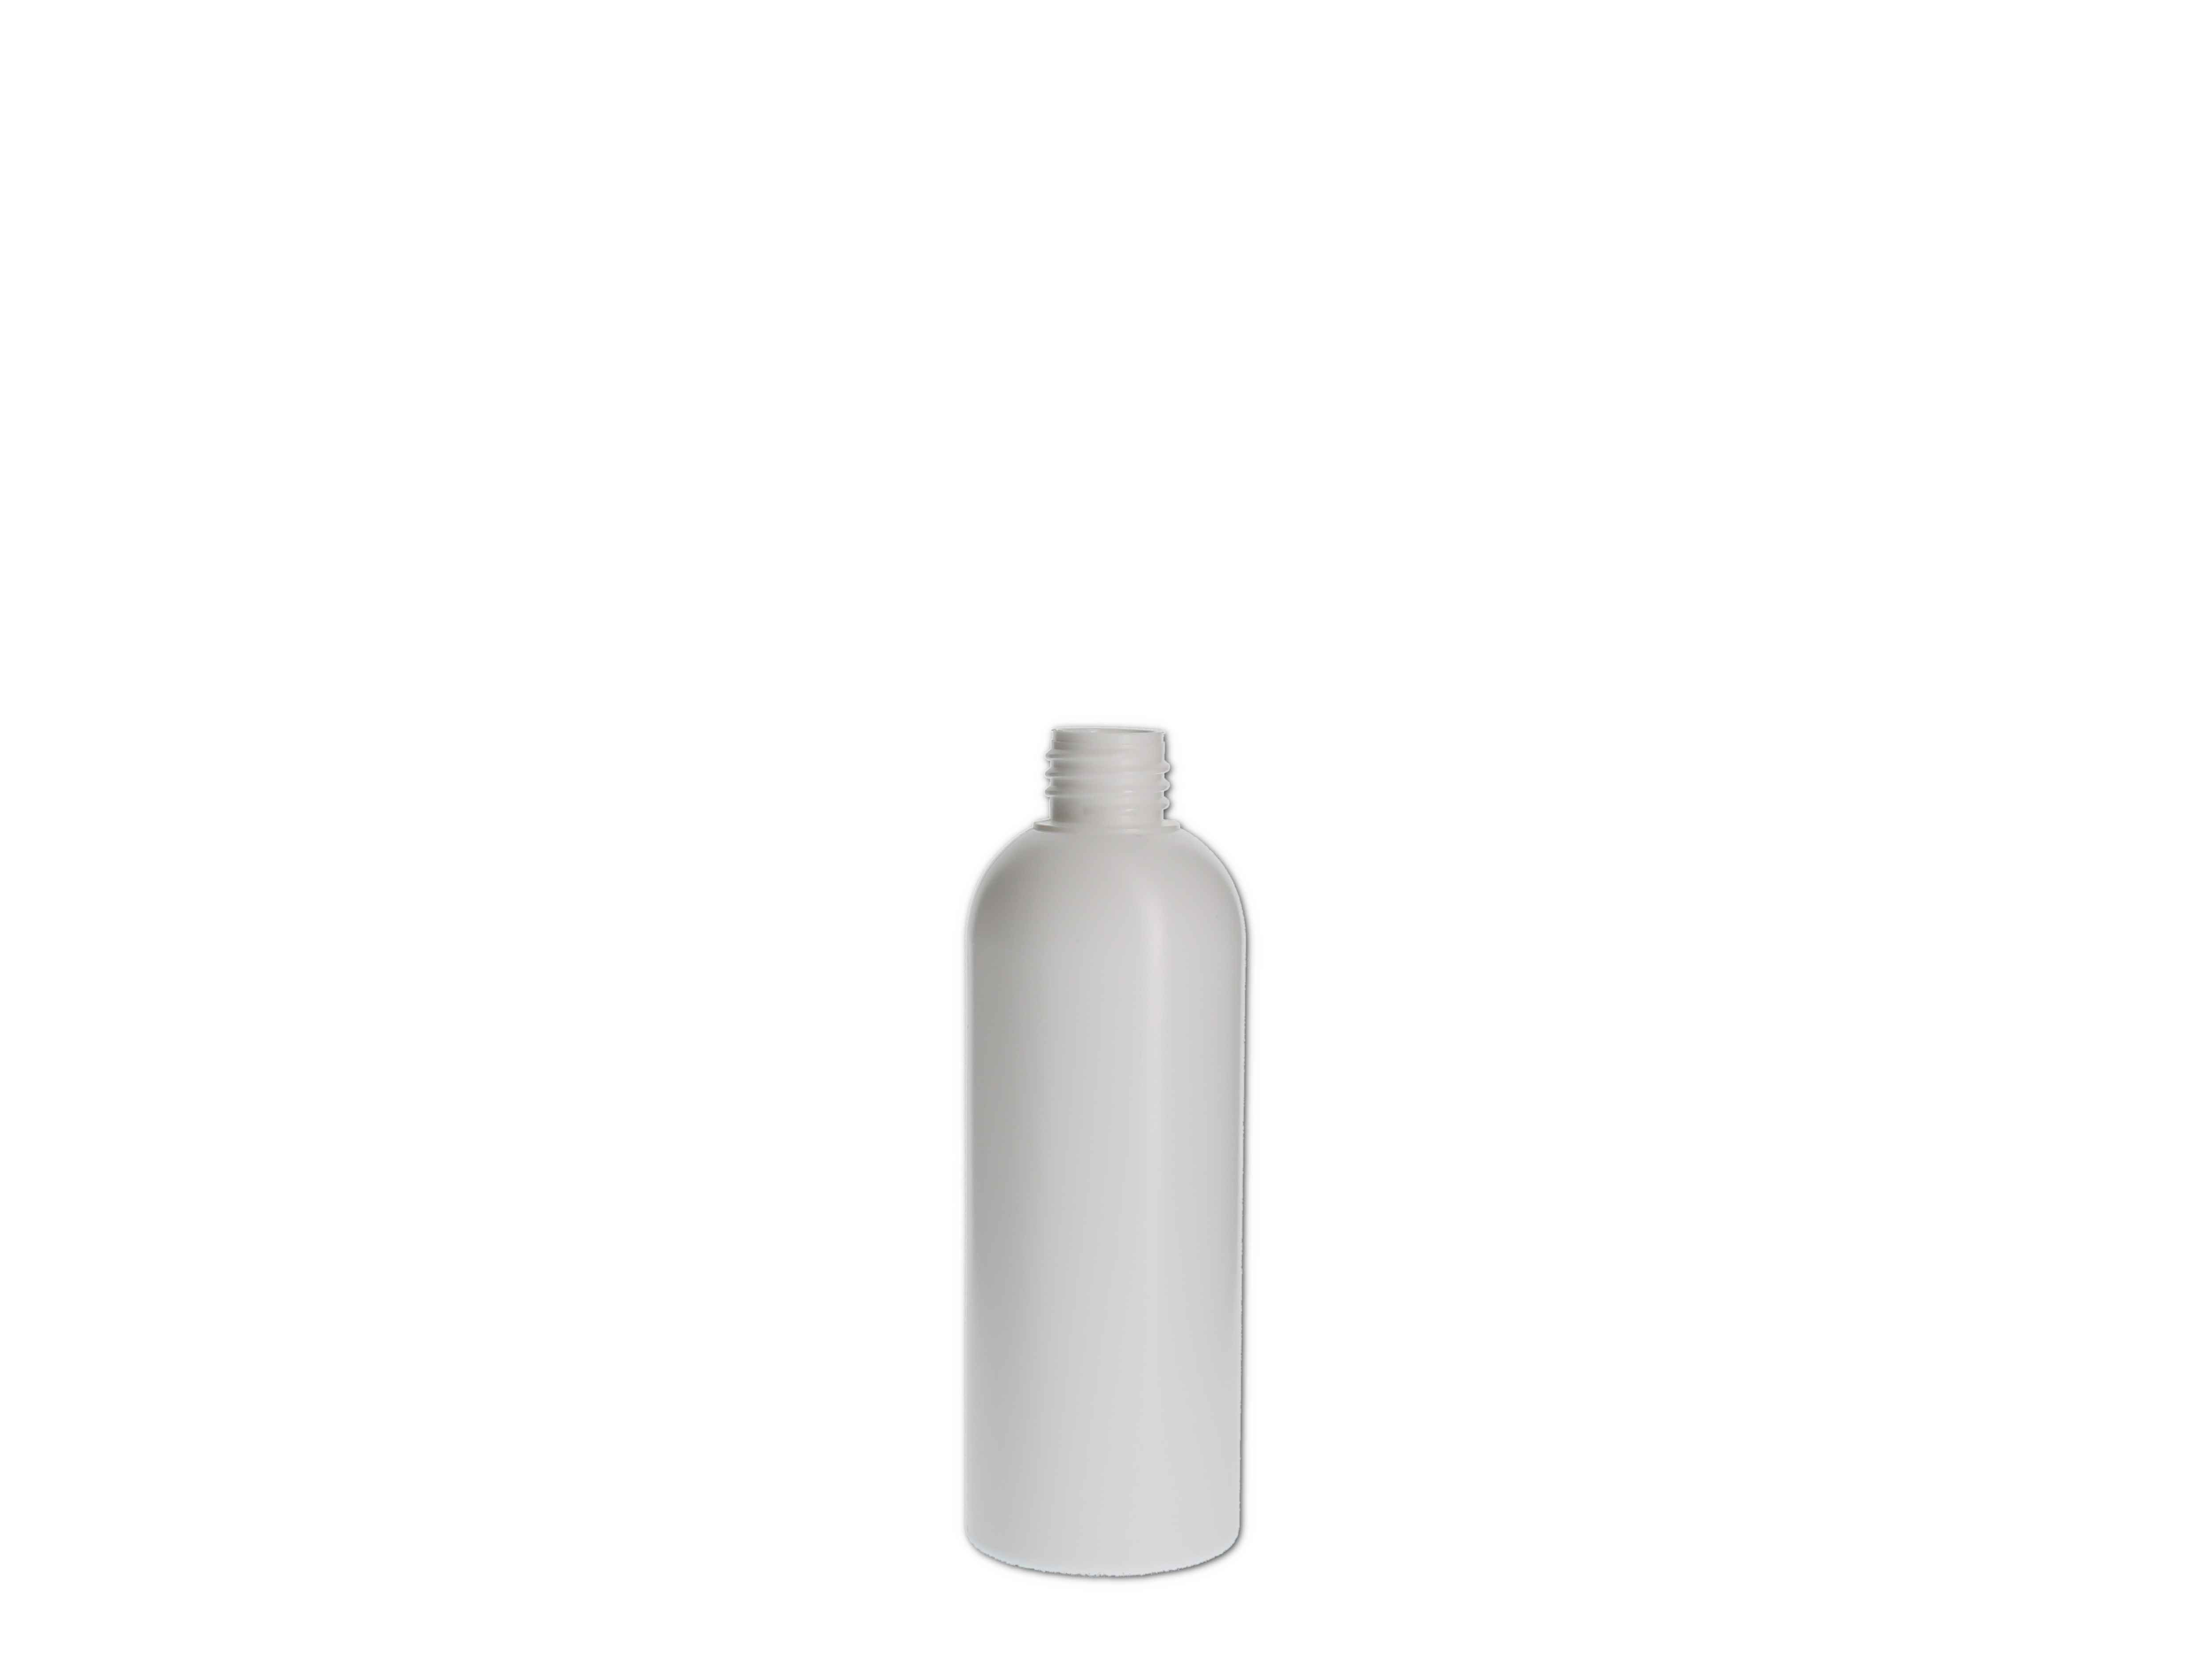    Kosmetikflasche, Kunststoff weiß, rund 150ml